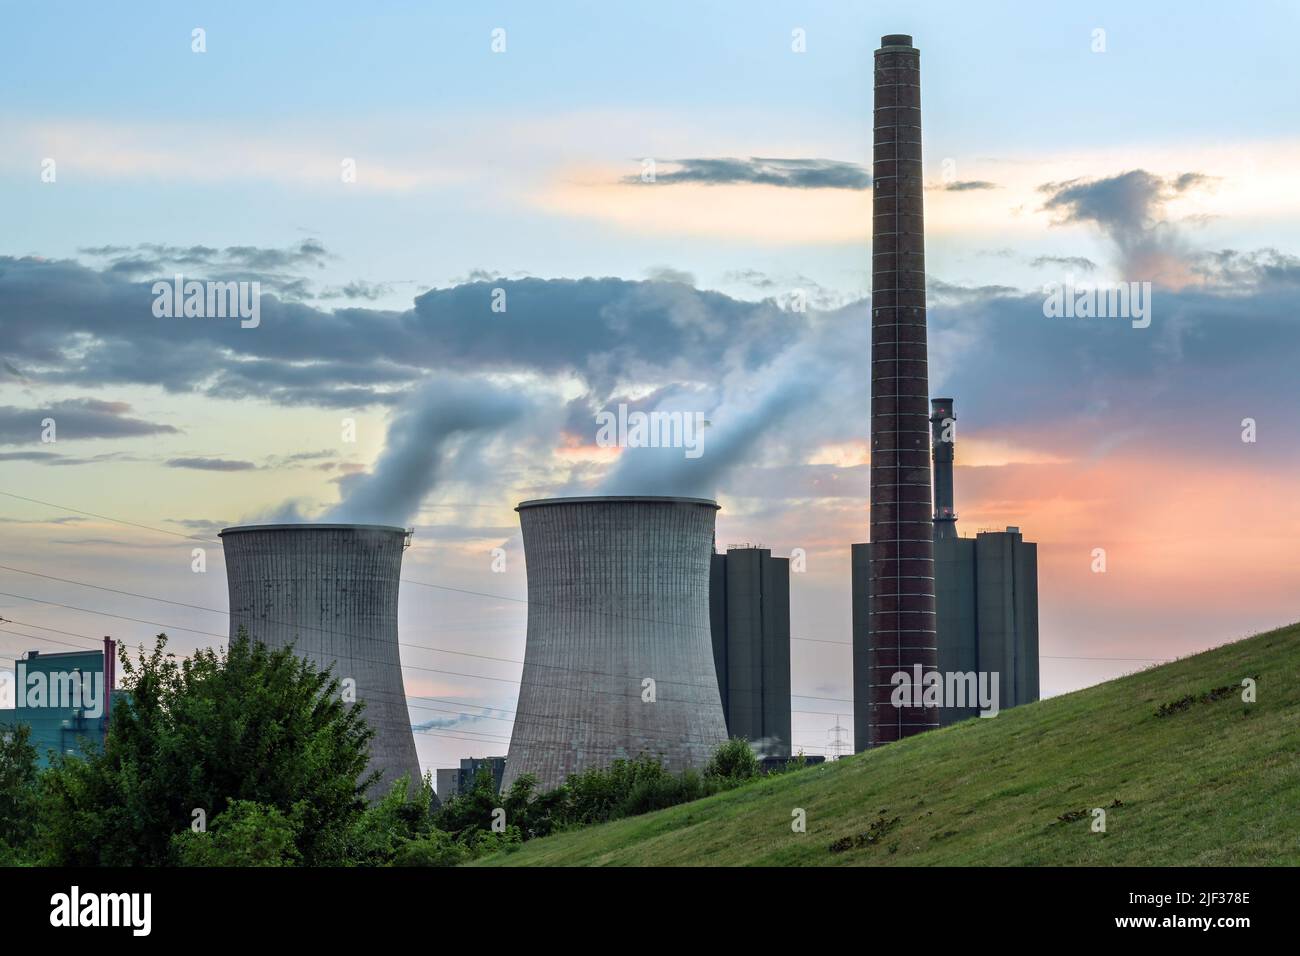 Industria di centrali pesanti, camino e torri con inquinamento alla acciaieria HKM a Duisburg, Germania contro un cielo nuvoloso al tramonto, spazio copia, s Foto Stock